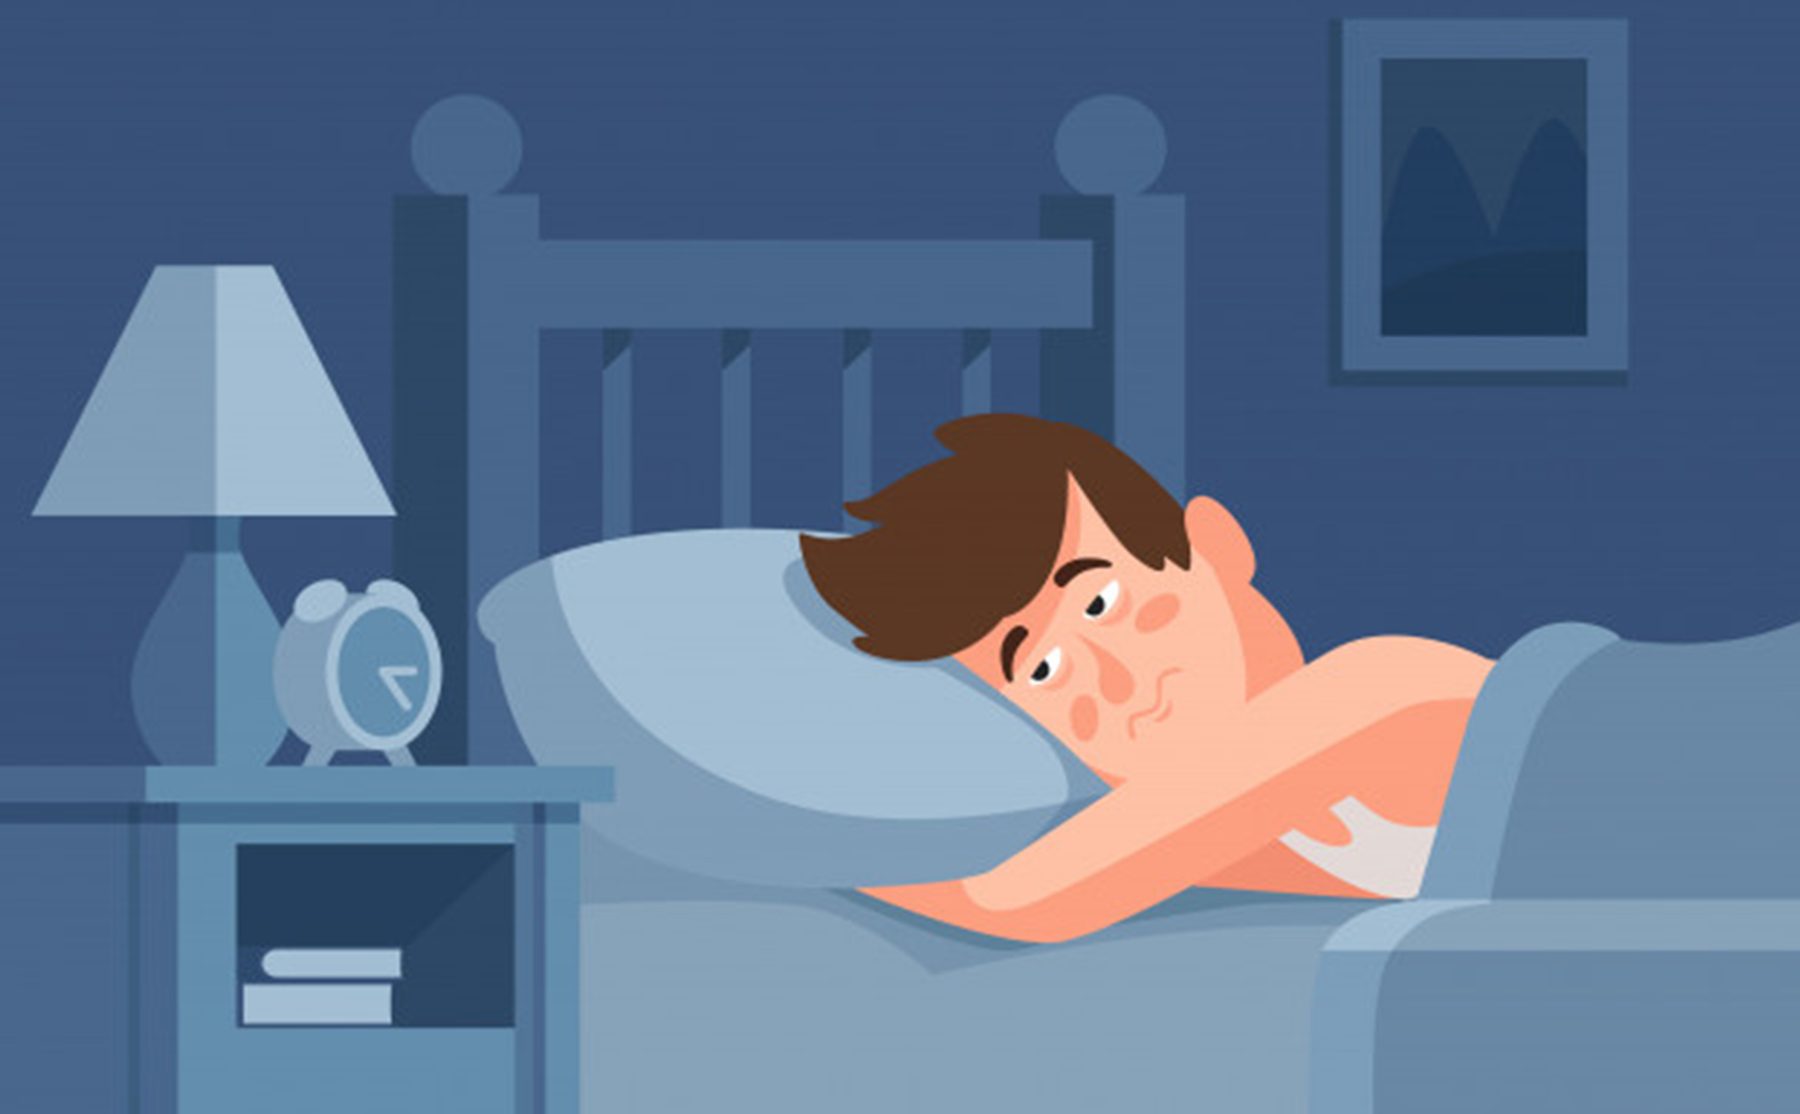 Trong nhiều thập kỷ, các nhà nghiên cứu và chuyên gia y tế coi mất ngủ là sản phẩm phụ hoặc triệu chứng của một tình trạng 